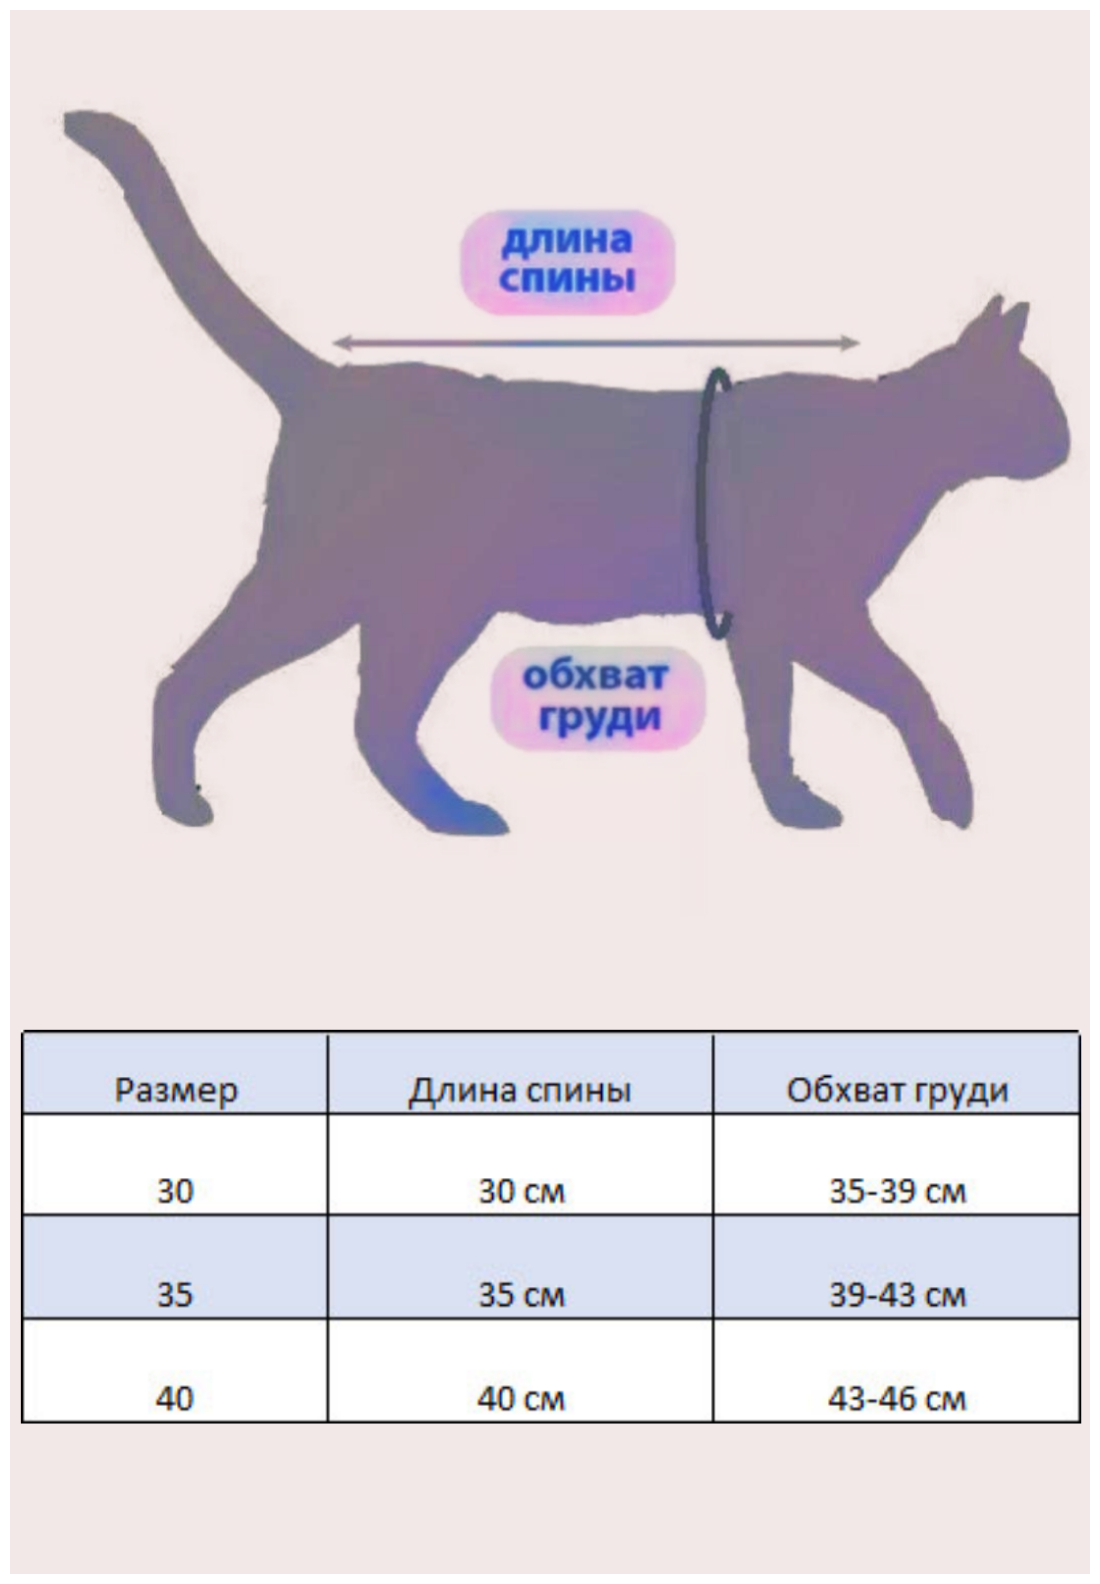 Свитшот для кошек, размер 35 (длина спины 35см), цвет милитари/ толстовка свитшот свитер для кошек сфинкс / одежда для животных - фотография № 2